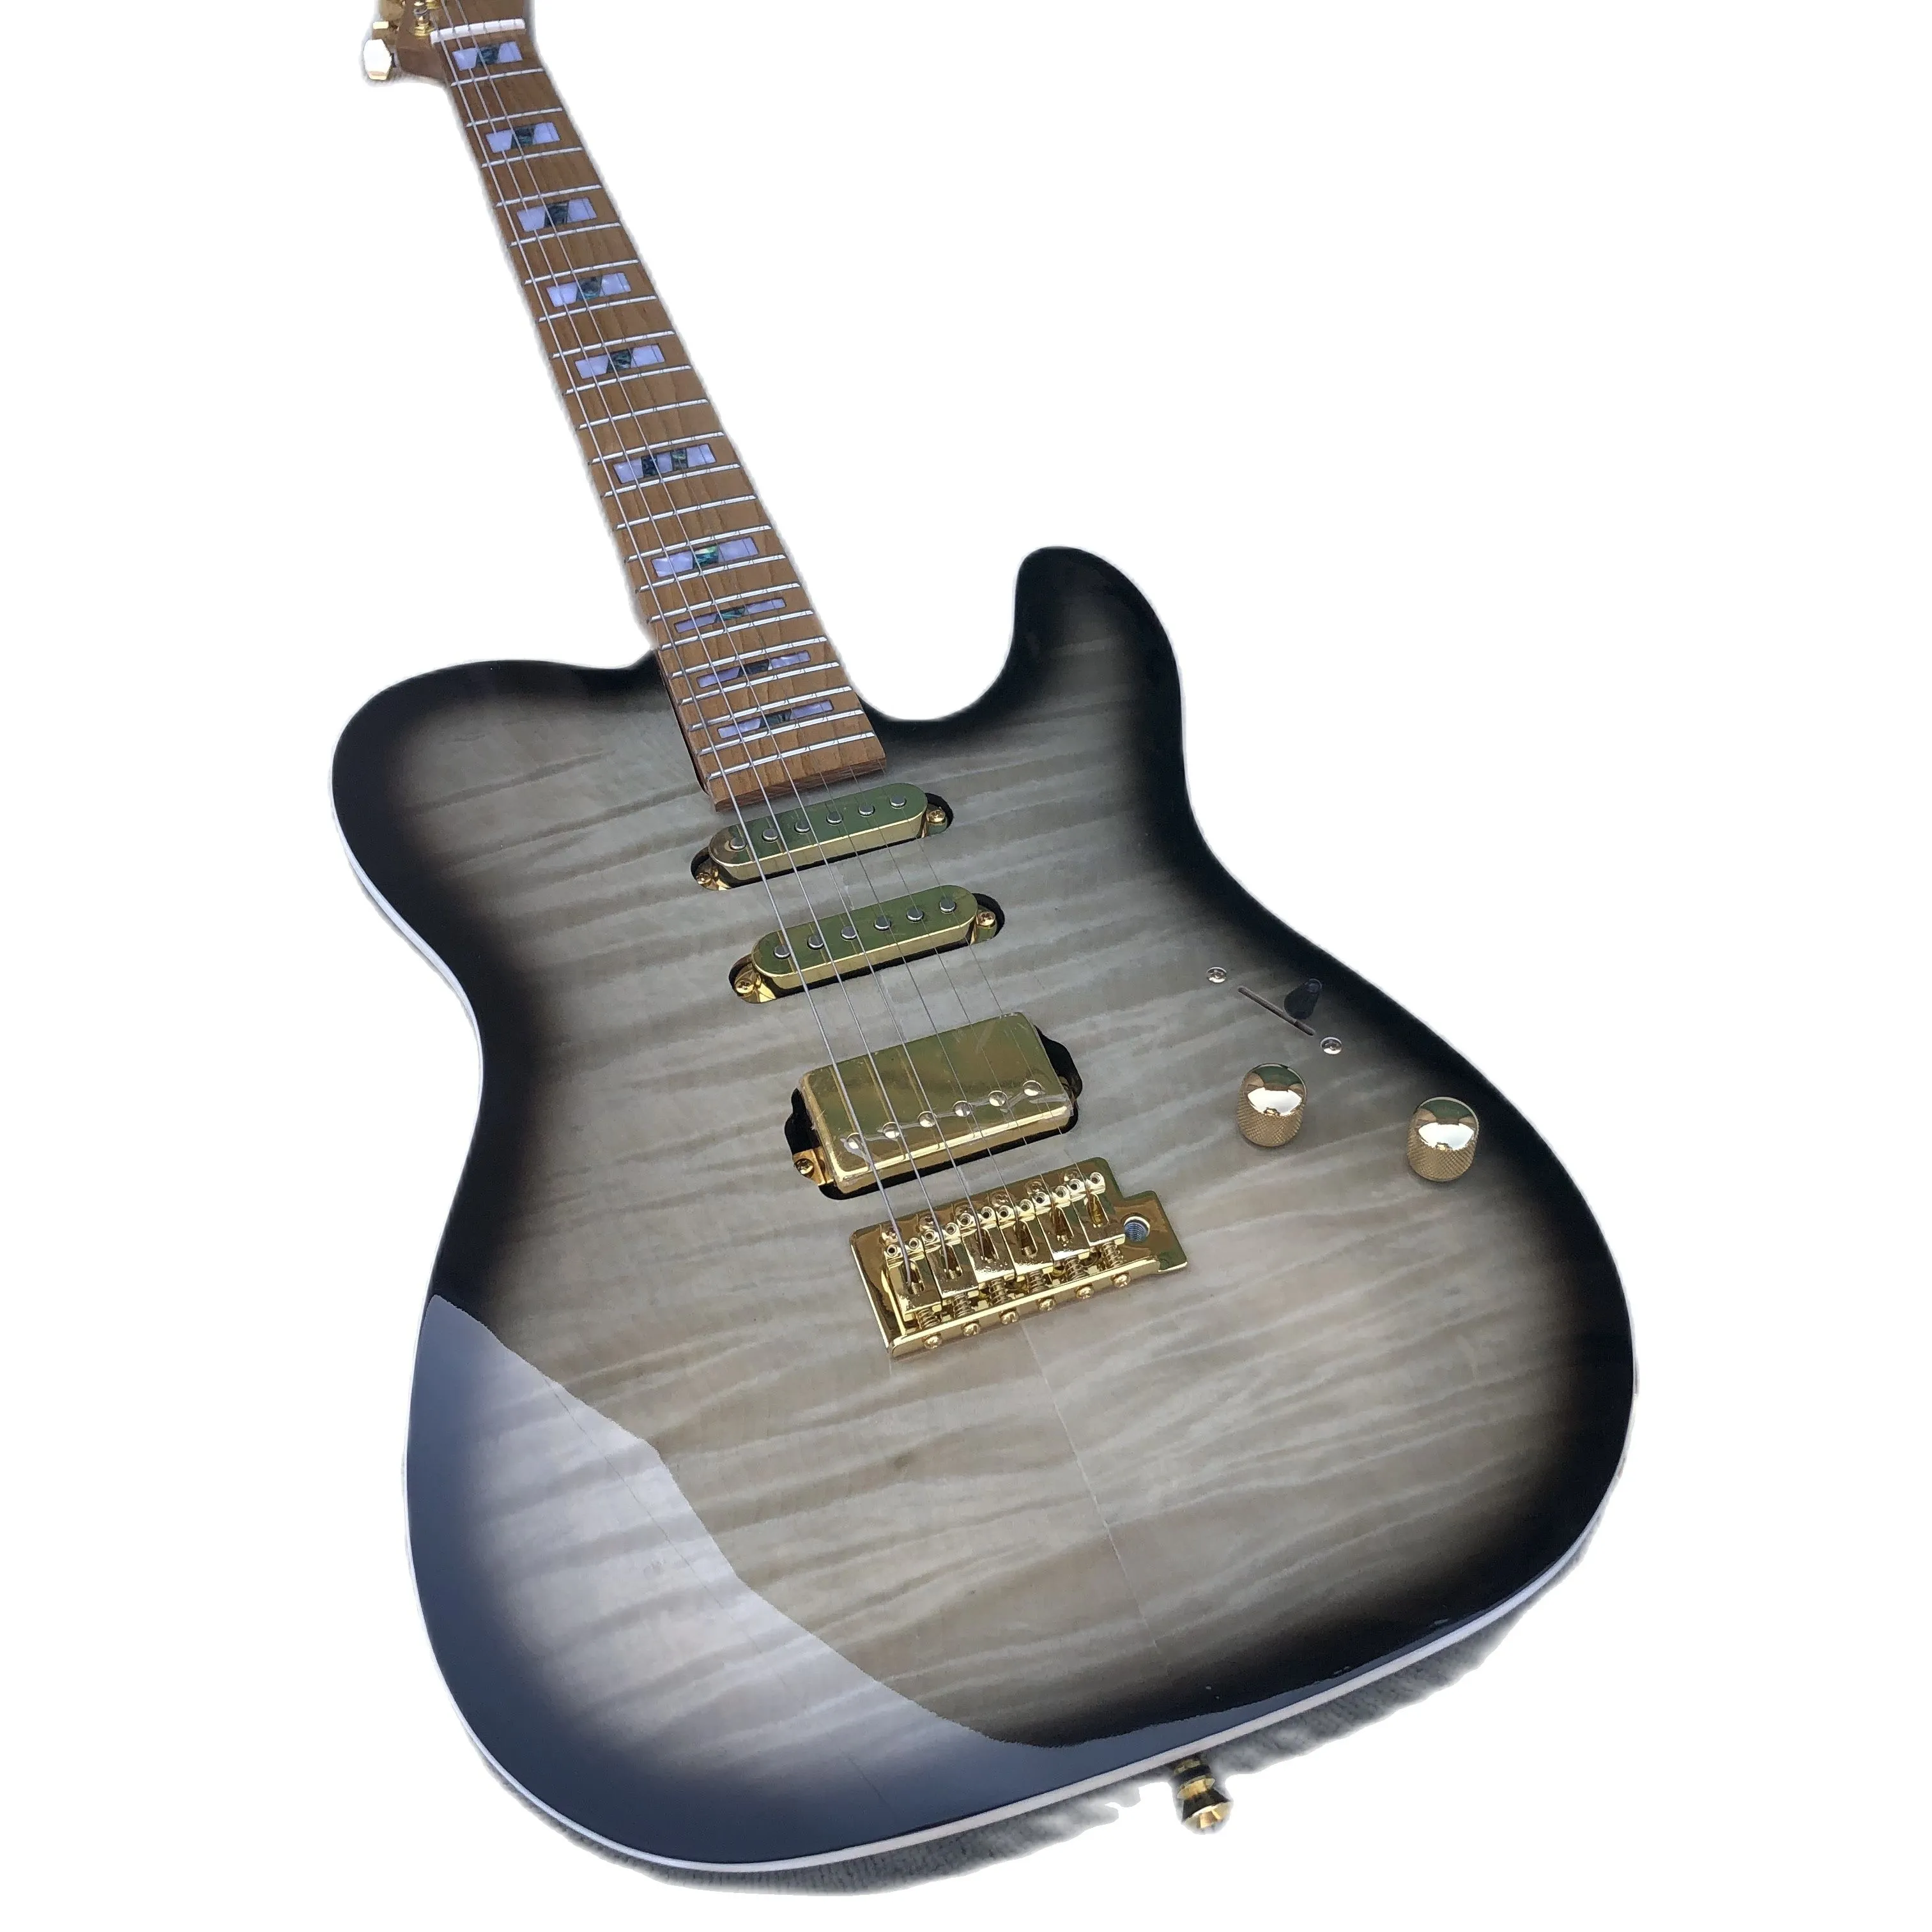 Chegada nova guitarra elétrica de 6 cordas, tinta transparente, pescoço de bordo de carvão, abalone inlay, tigre maple vene